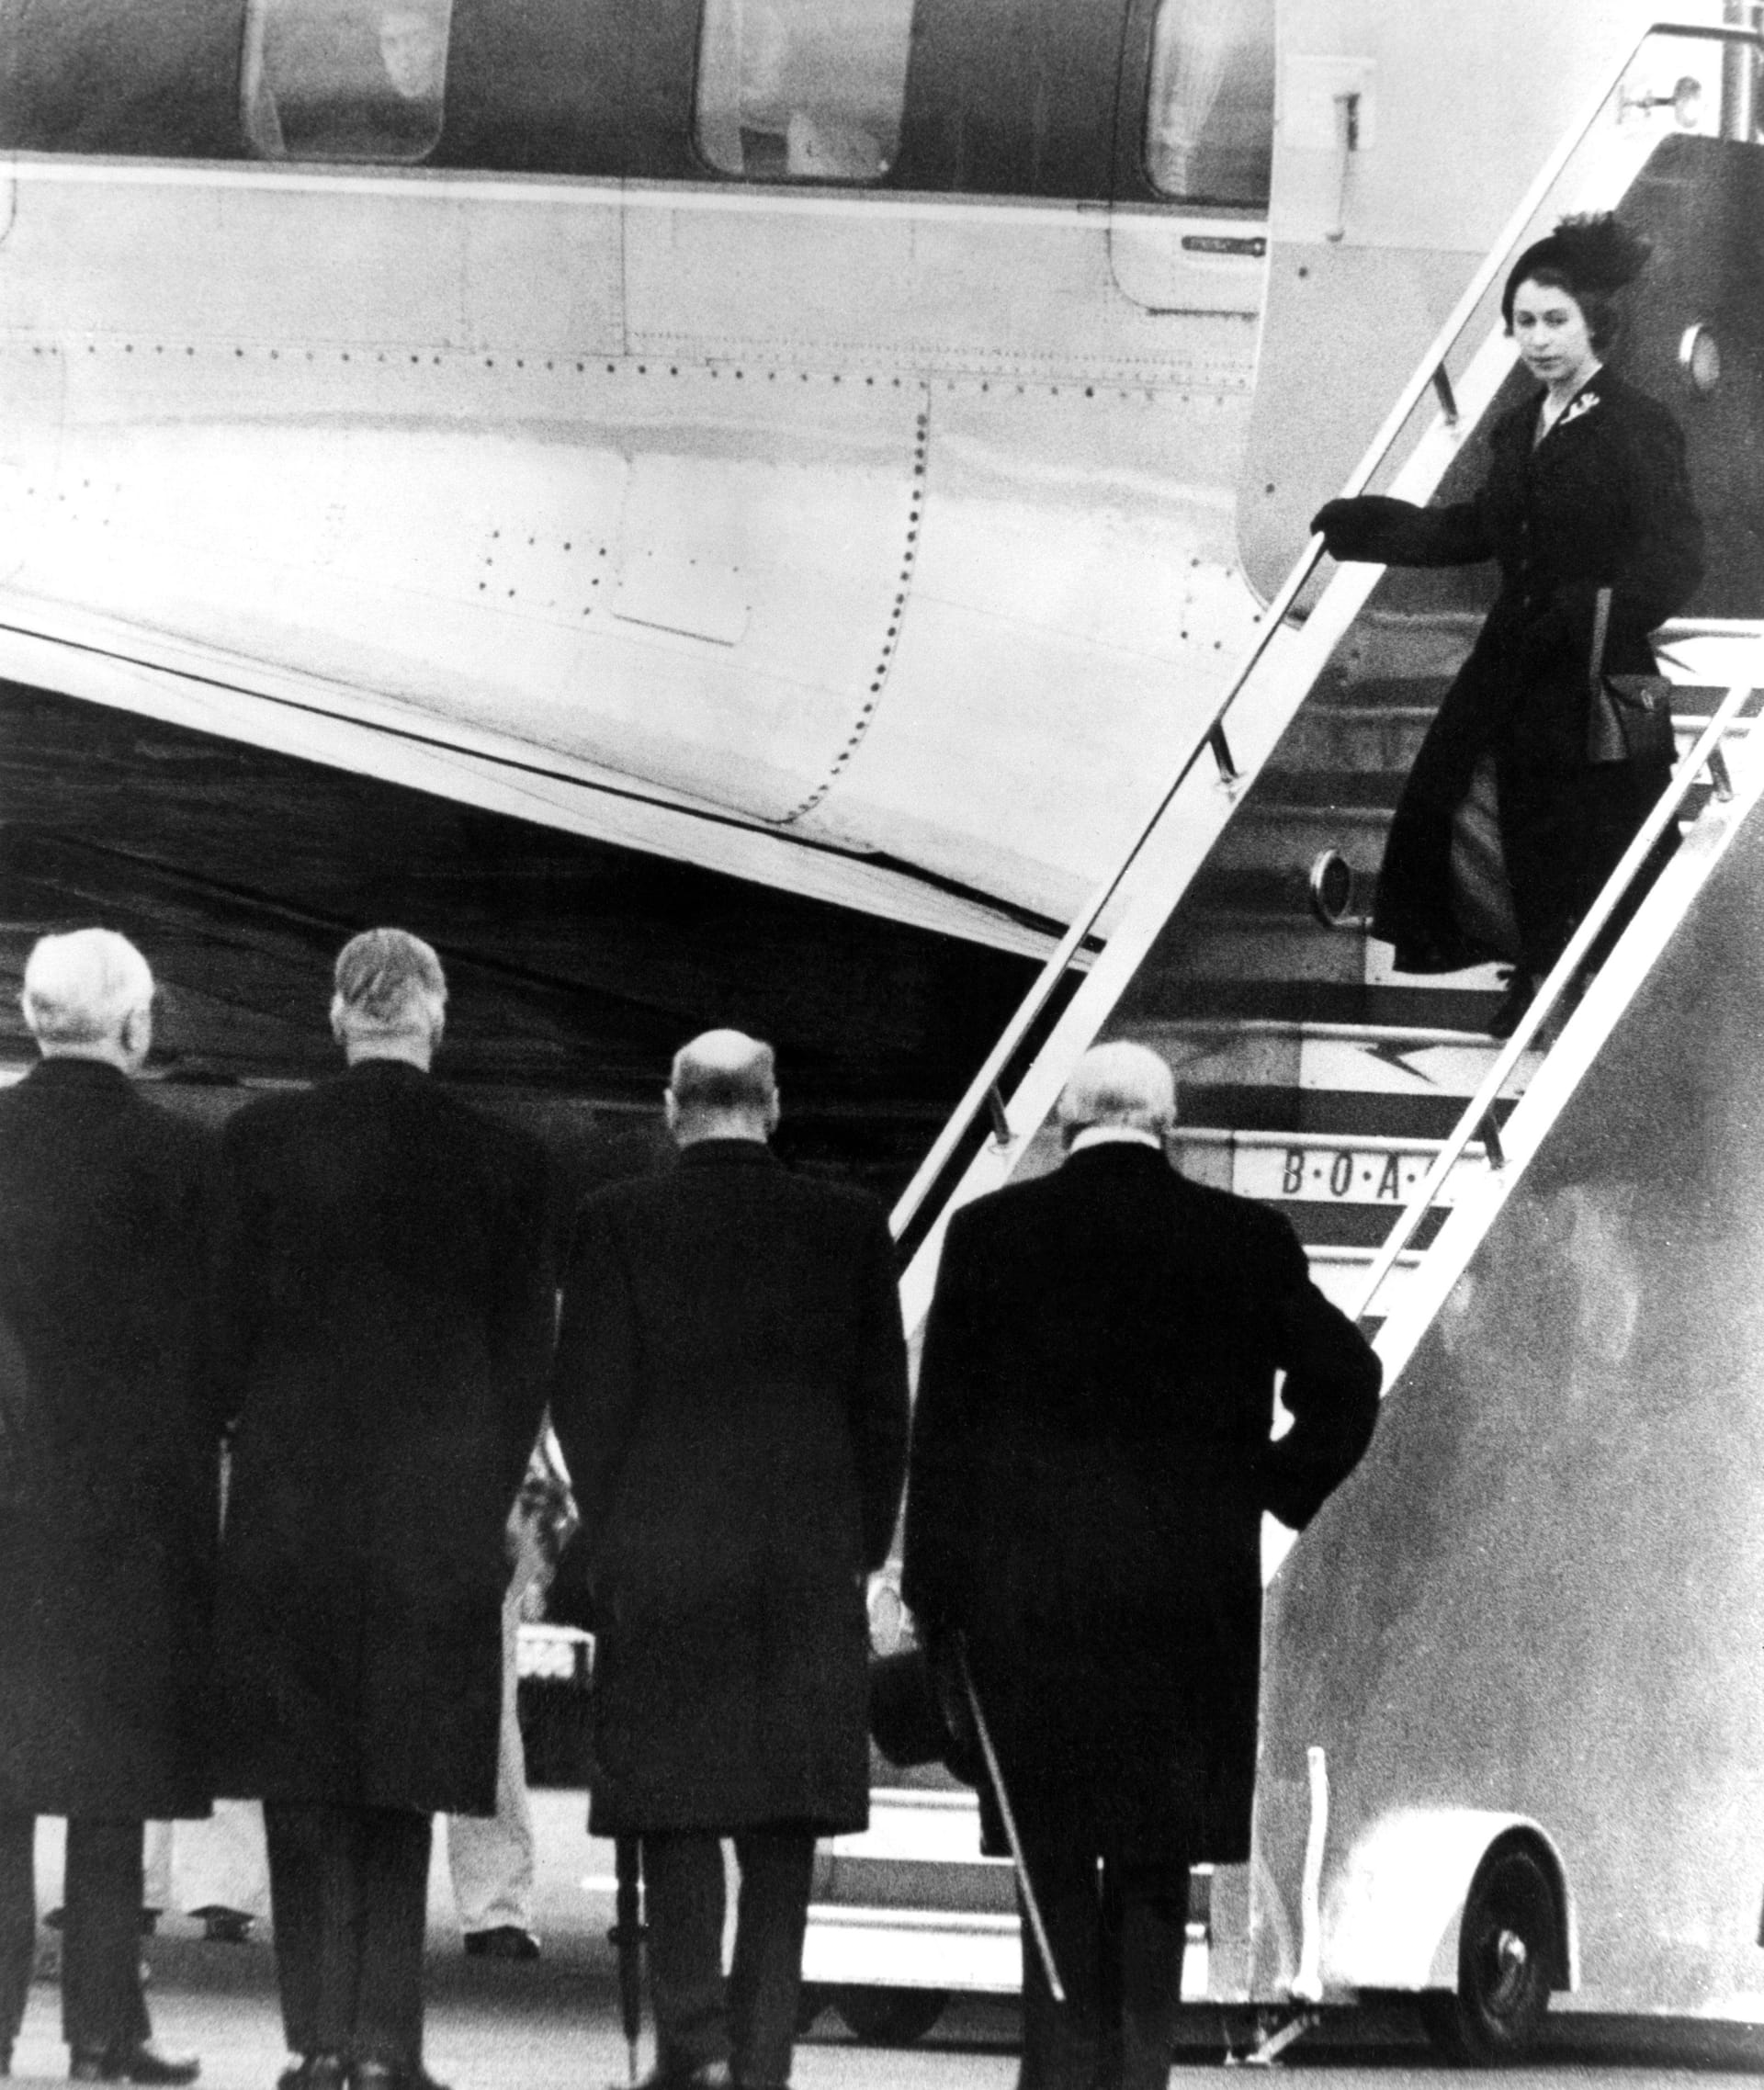 Rückkehr aus Kenia als Königin: Am 6. Februar 1952 stirbt Elizabeths Vater, König George VI. Sofort brechen sie und ihr Ehemann Philip ihre Reise ab und fliegen zurück nach England.